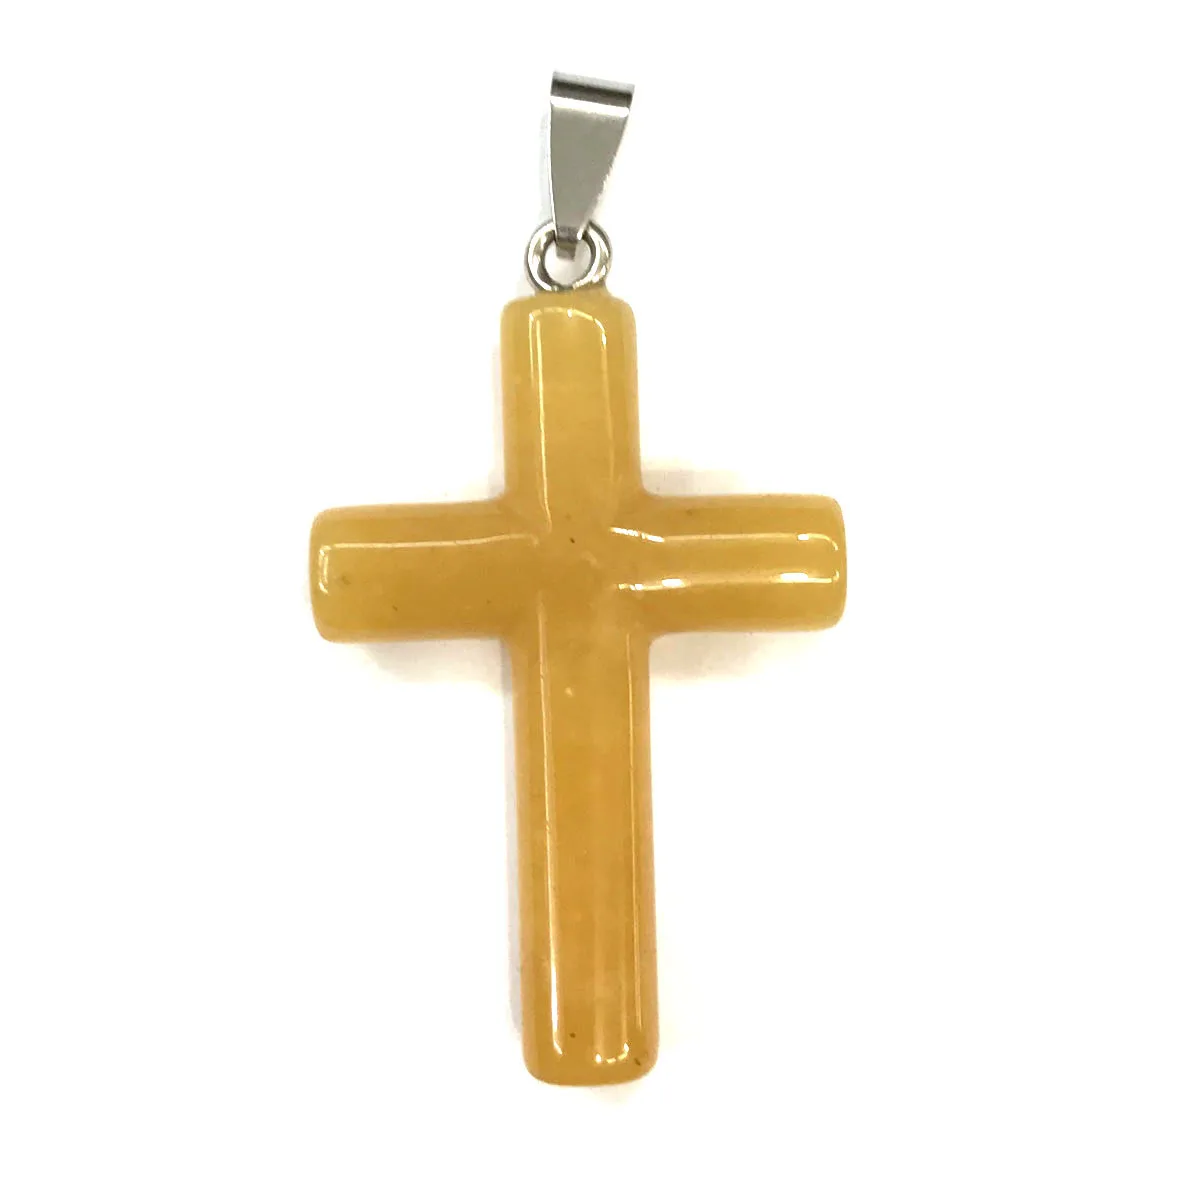 Подвески из натурального камня в форме Креста, хрустальные Агаты, ожерелье, подвеска для изготовления ювелирных изделий, хорошее качество, размер 28 мм x 44 мм - Окраска металла: Yellow Jade